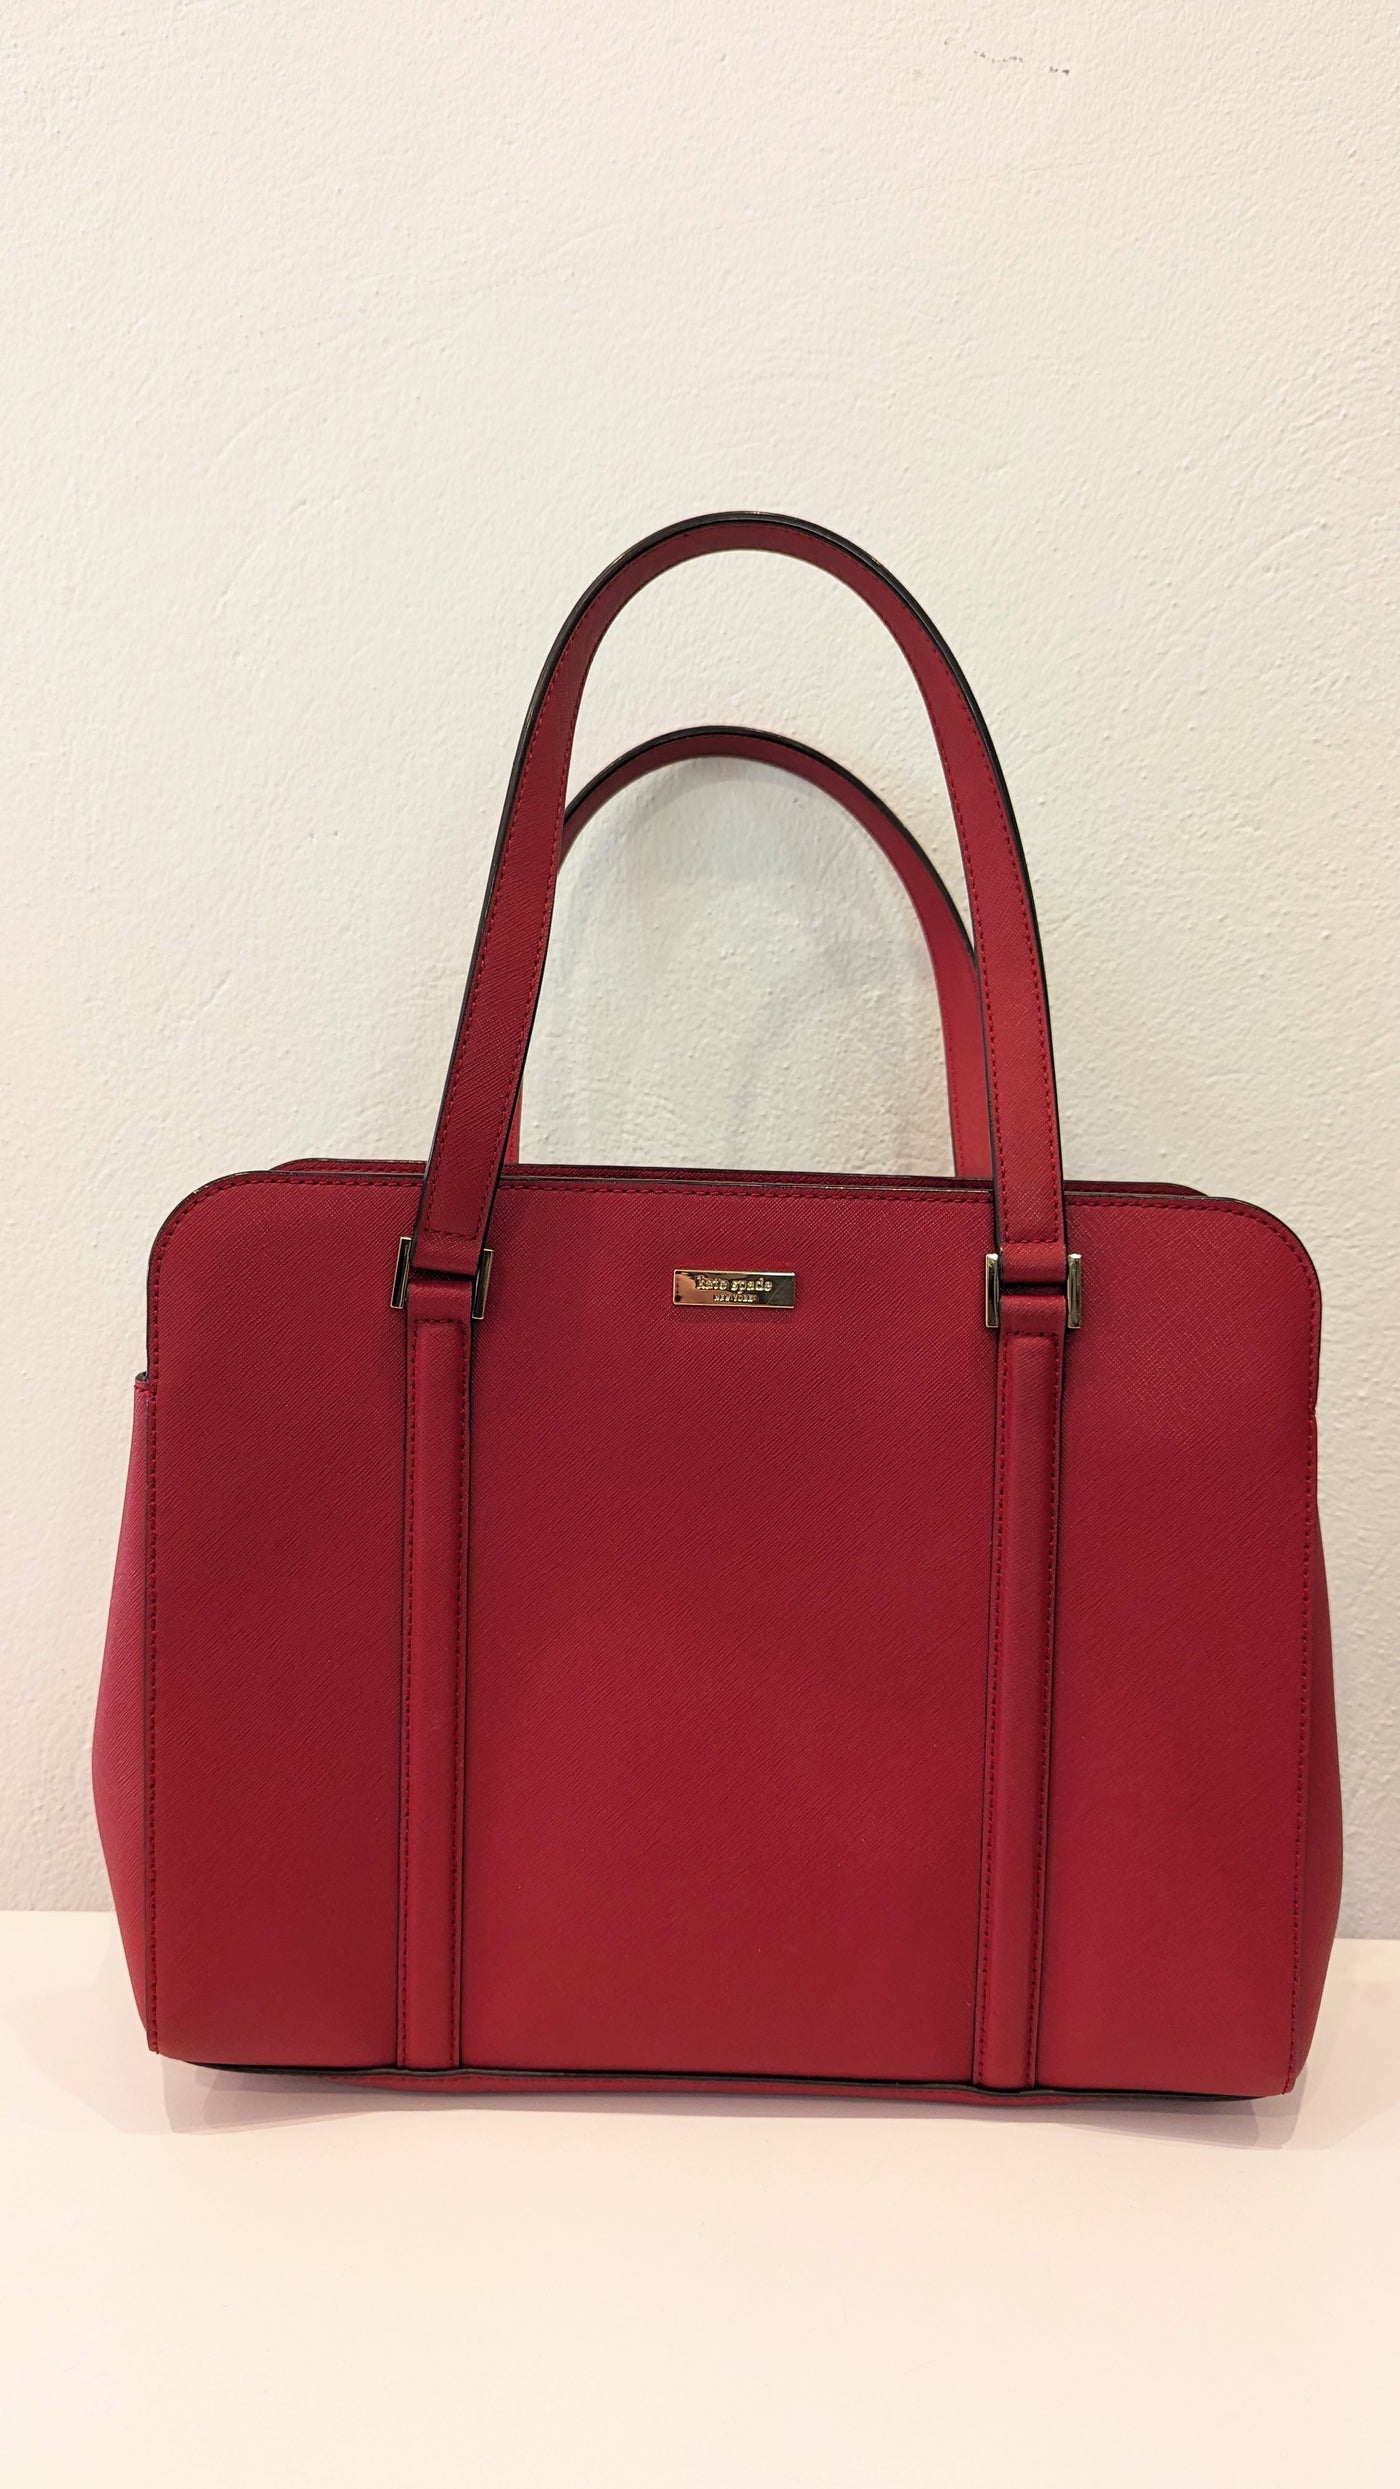 Kate Spade Large Red Bag